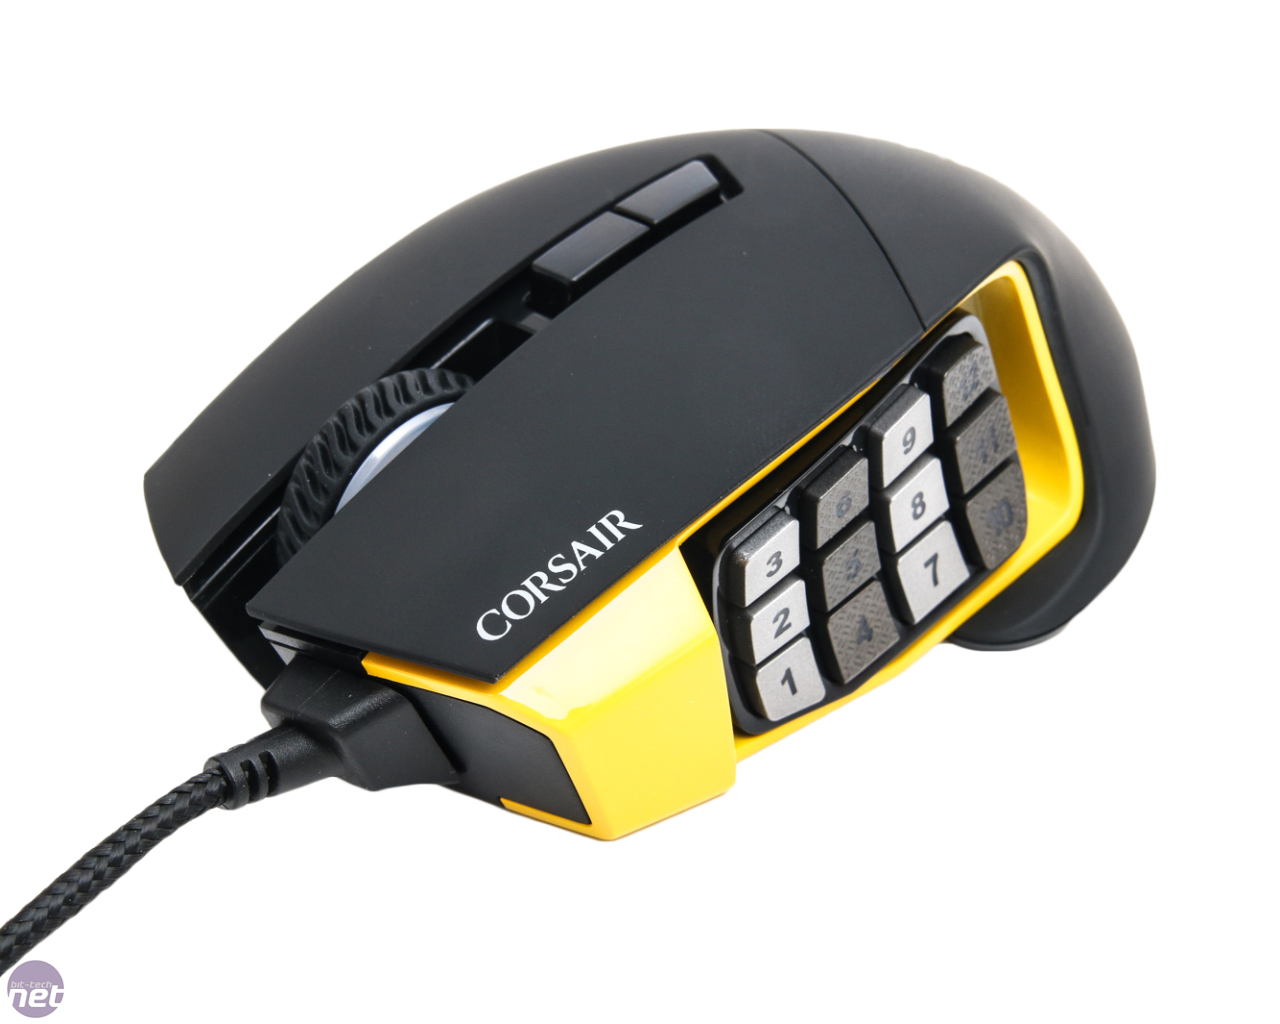 Corsair Scimitar RGB Gaming Mouse Review